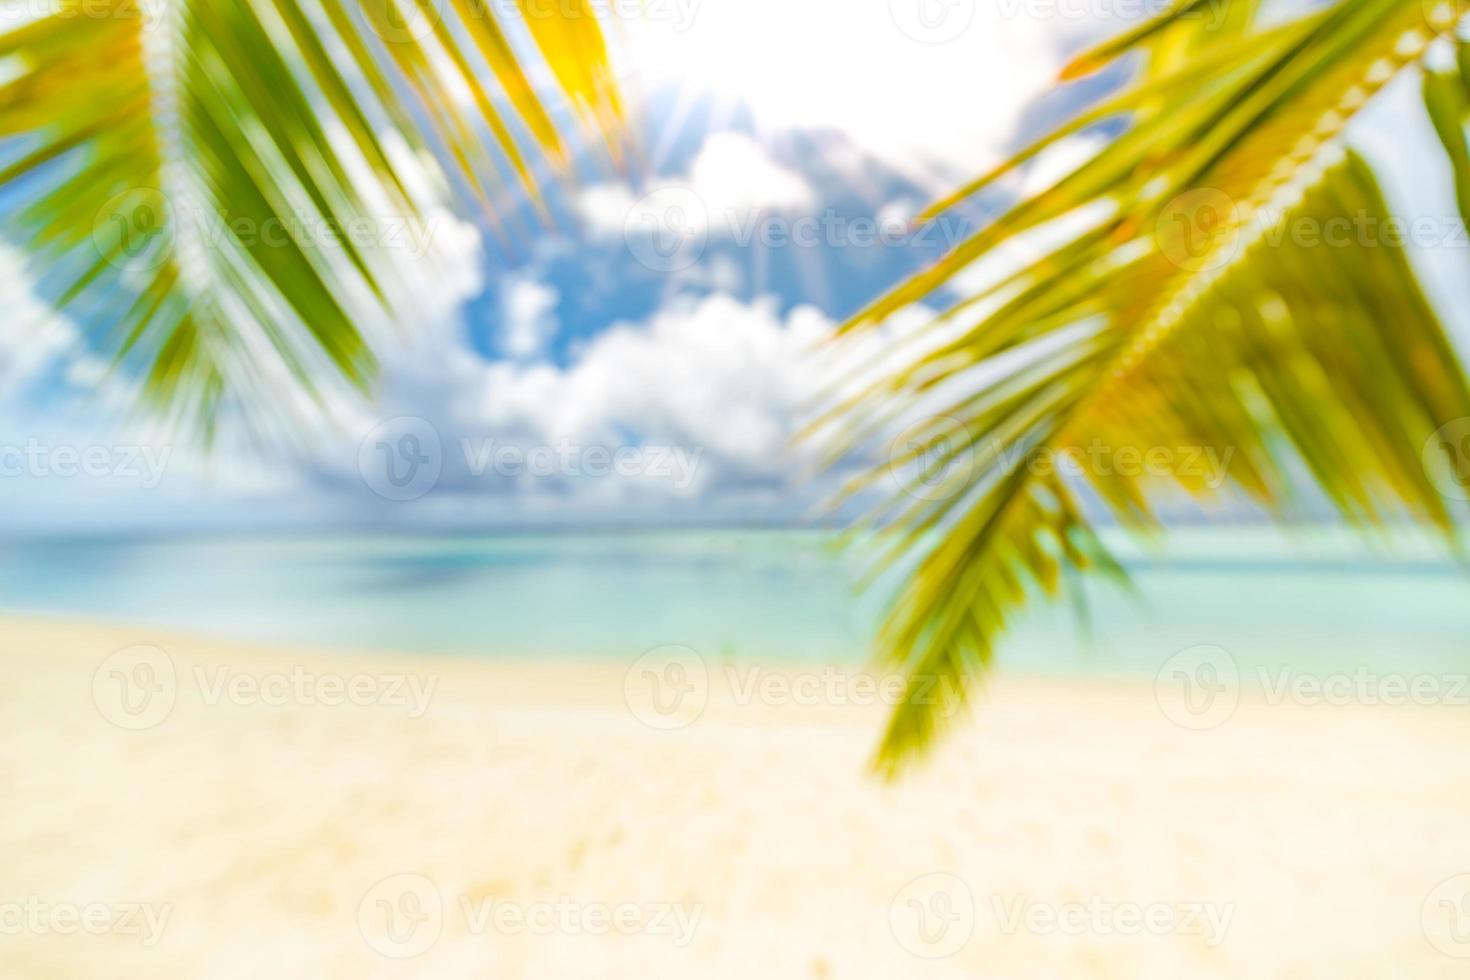 mooi vervagen strand, groen palm blad boom, zonnig het weer, zon stralen met blauw zee visie en horizon. tropisch strand landschap voor zomer vakantie toerisme banier, vervagen bokeh concept gebruik website sjabloon foto